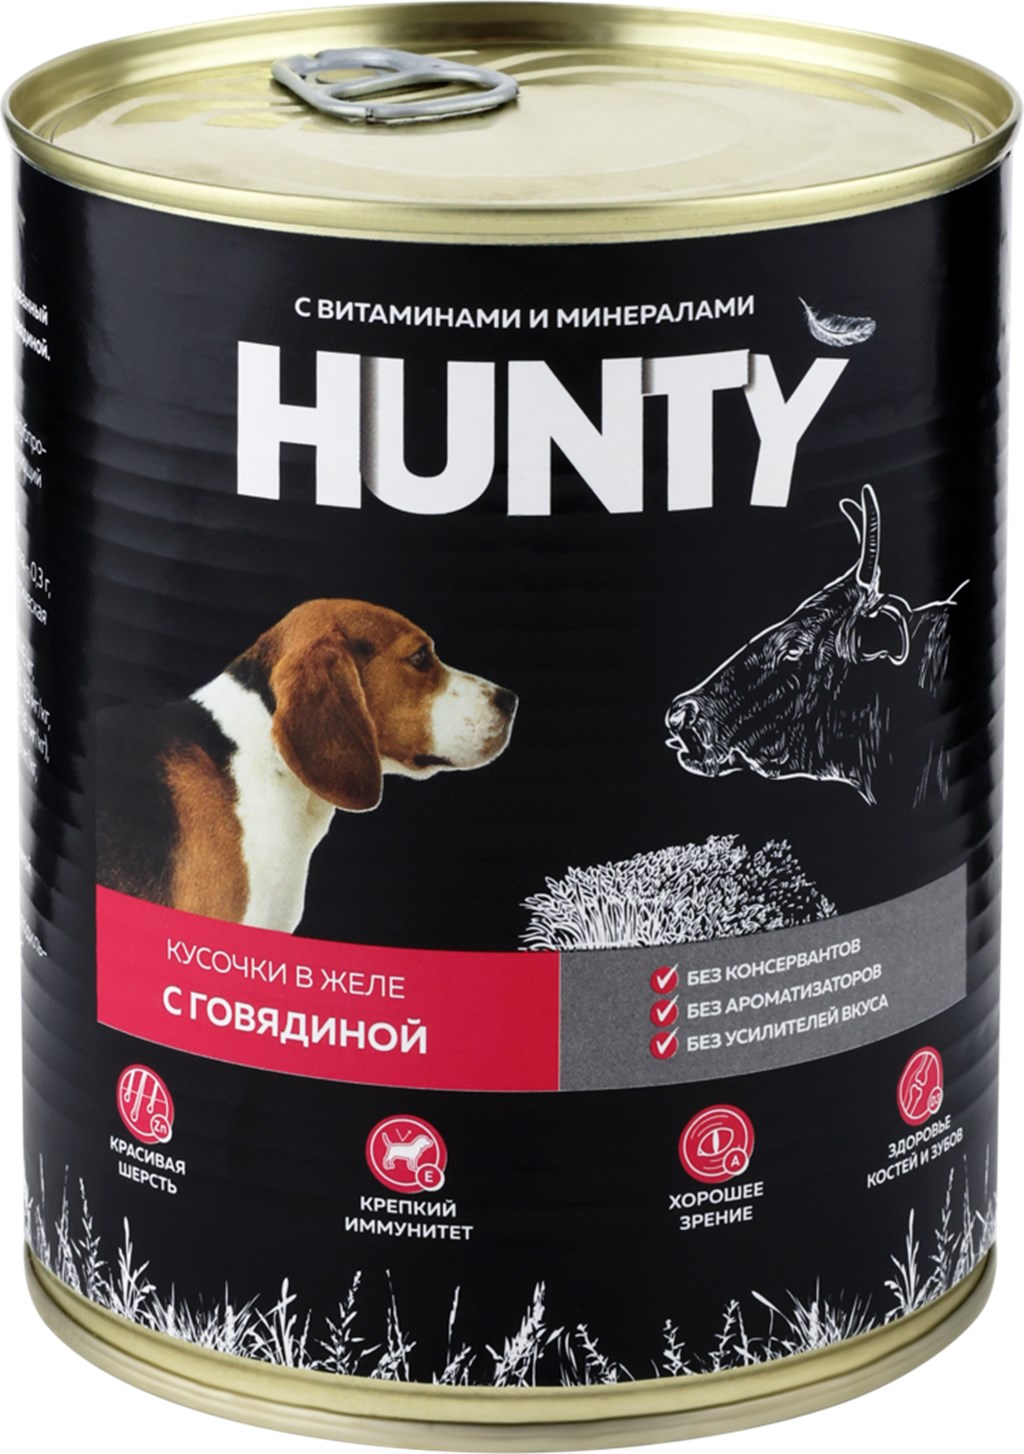 

Влажный корм для собак Hunty с говядиной, 850 г